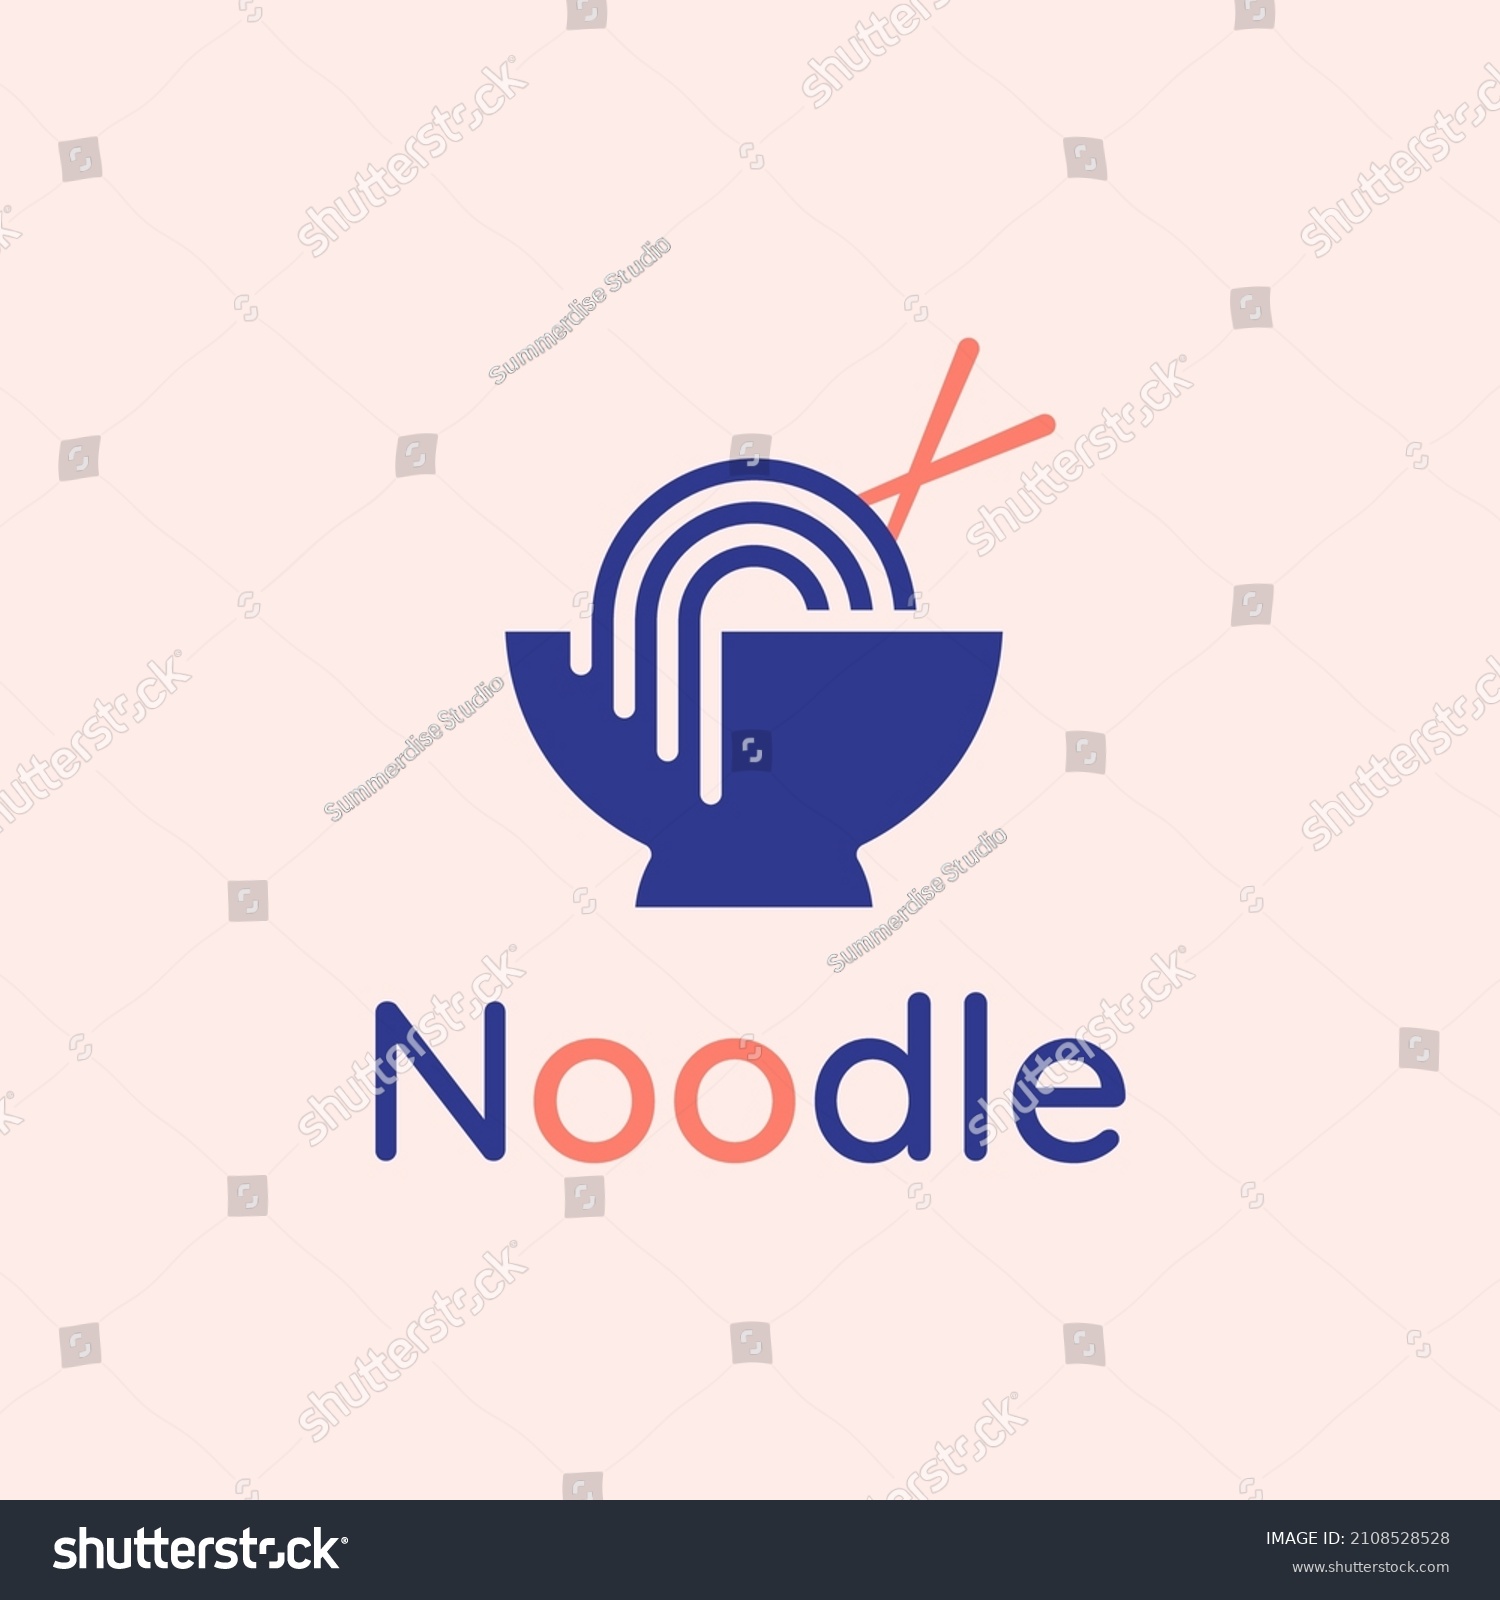 SVG of noodle food line logo with bowl and chopsticks
 svg